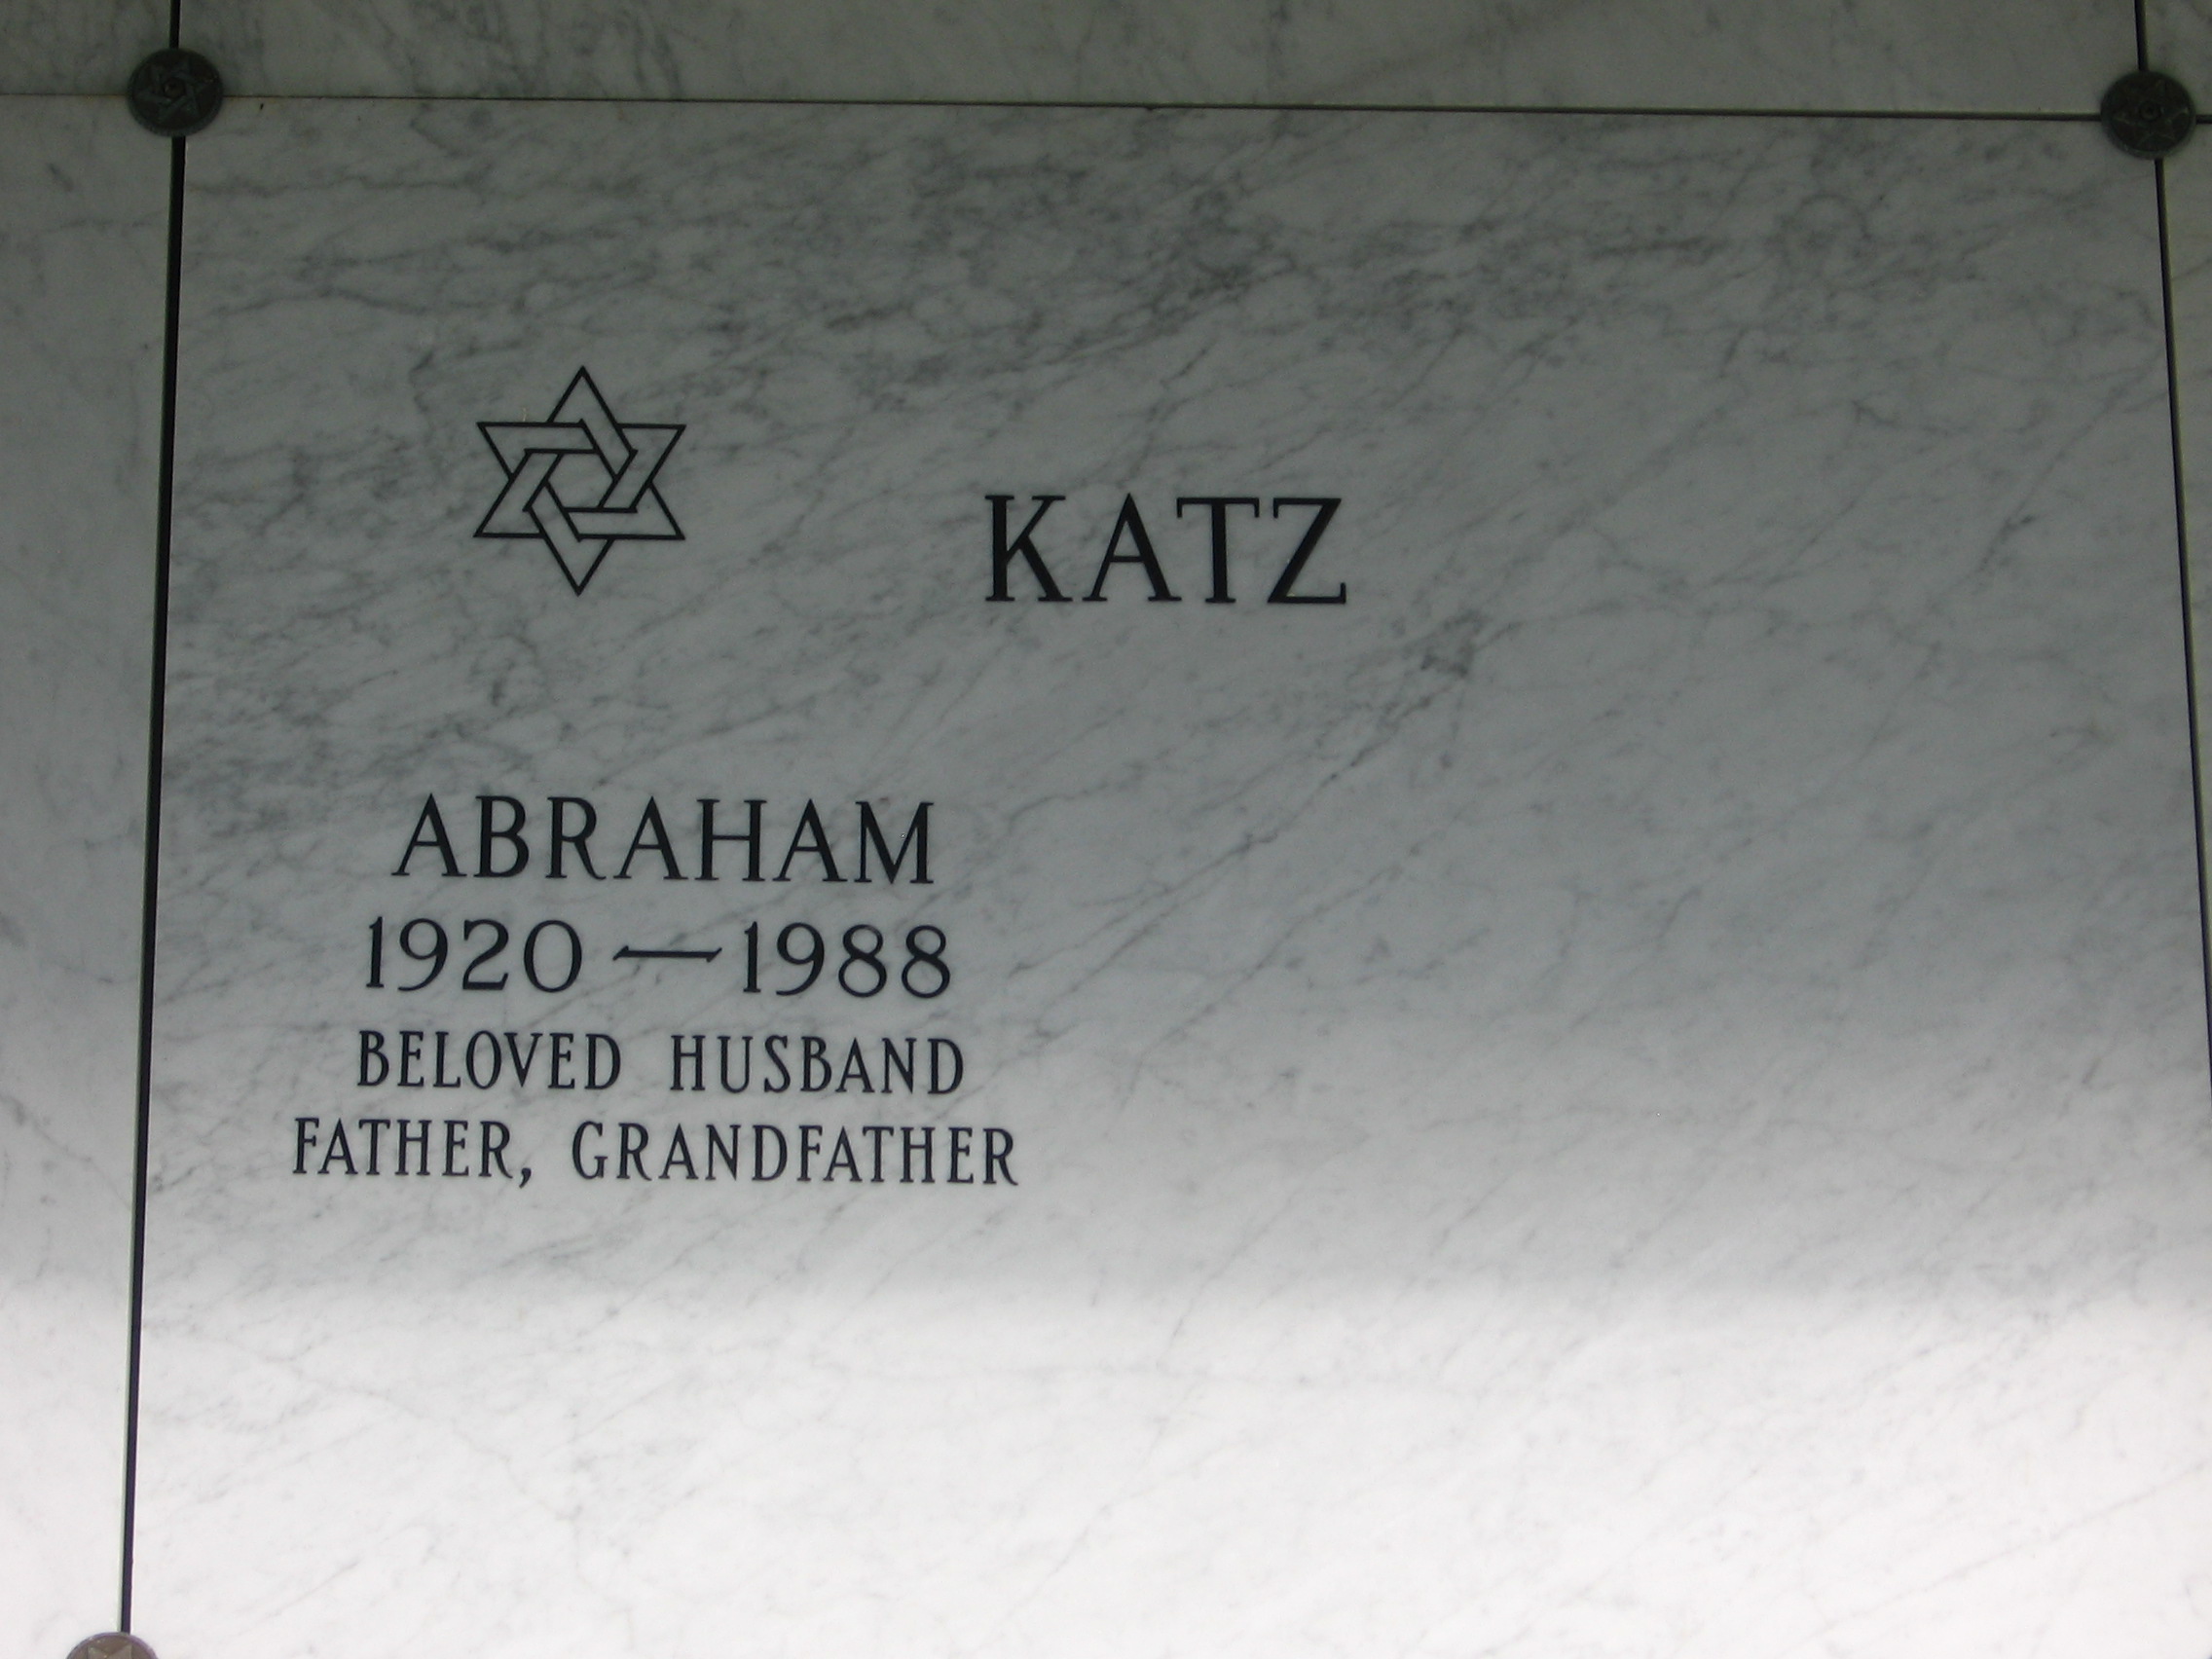 Abraham Katz